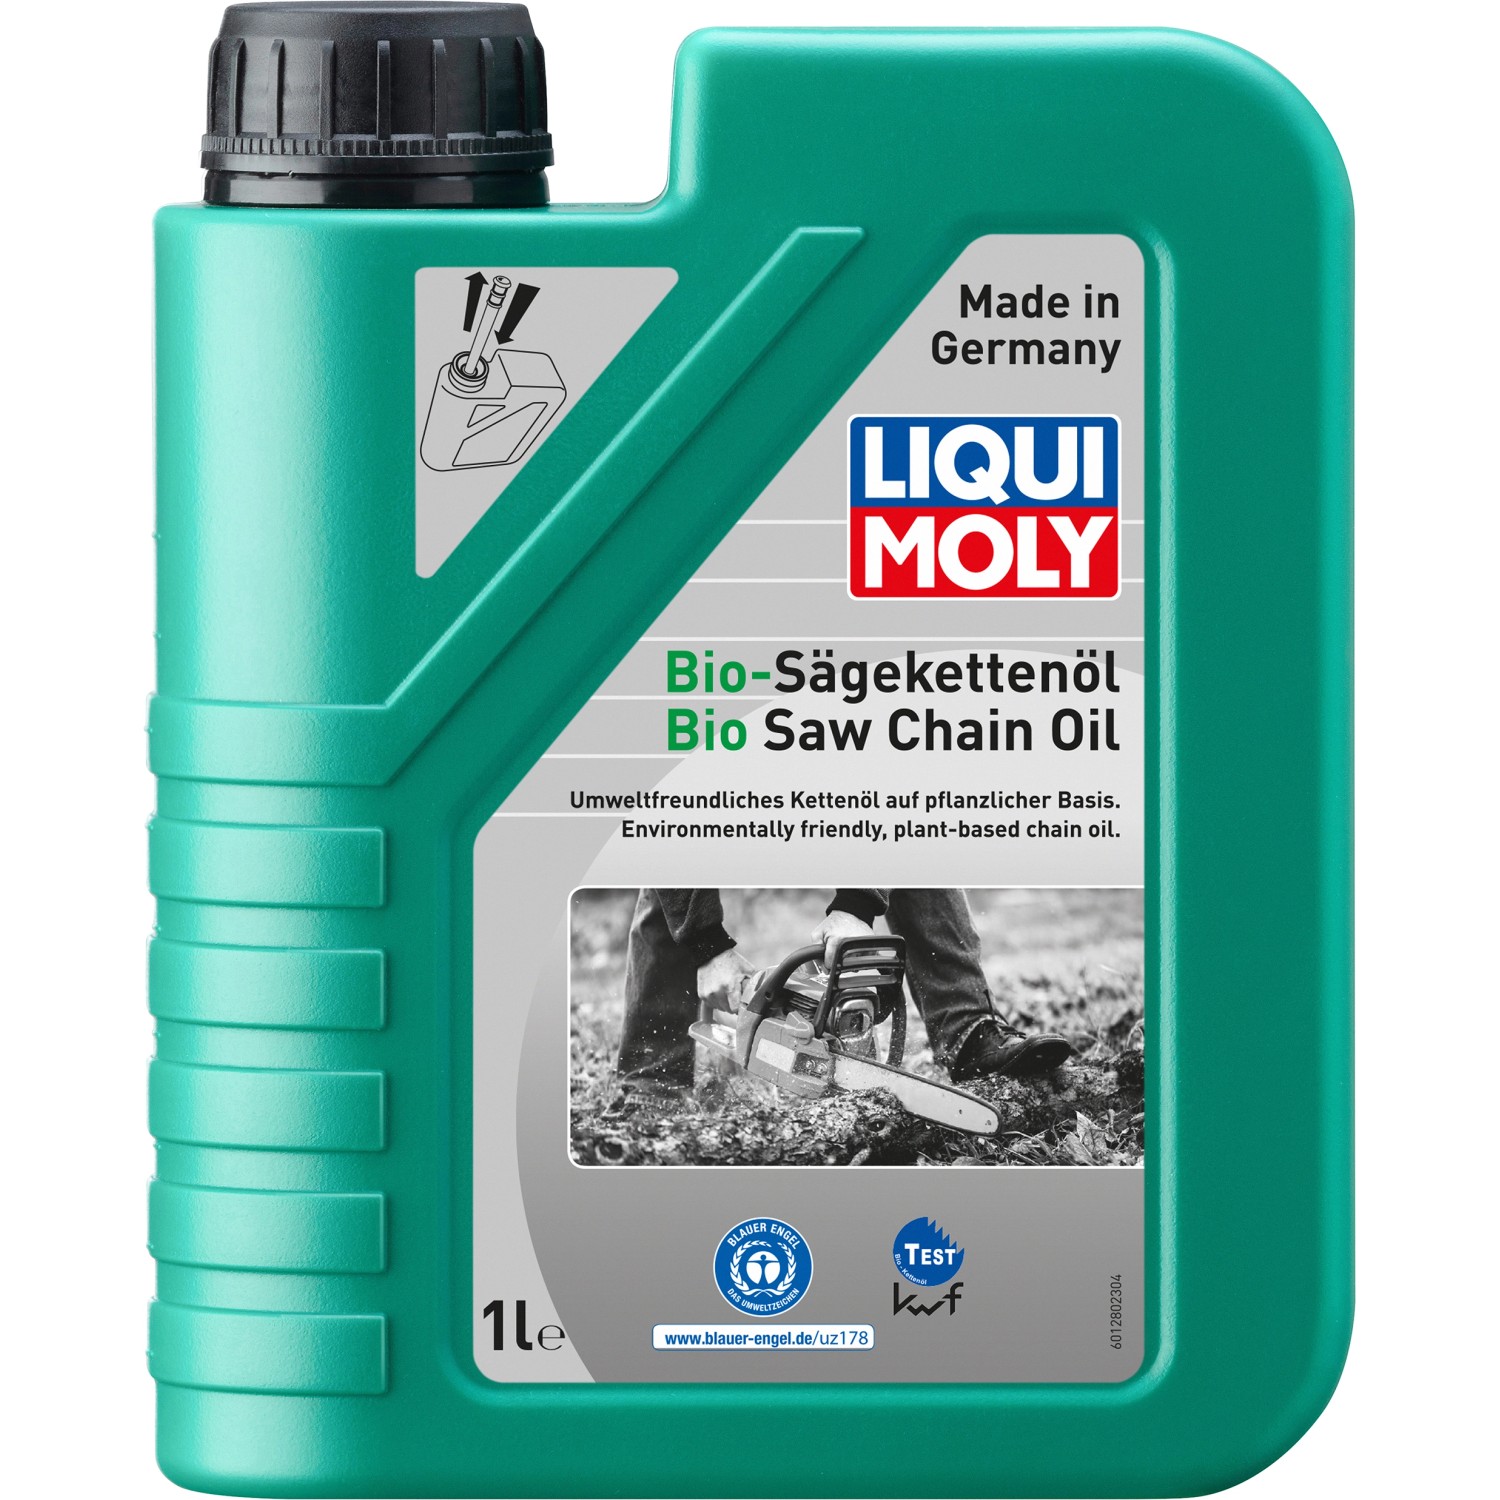 Liqui Moly Bio-Sägekettenöl 1 l kaufen bei OBI